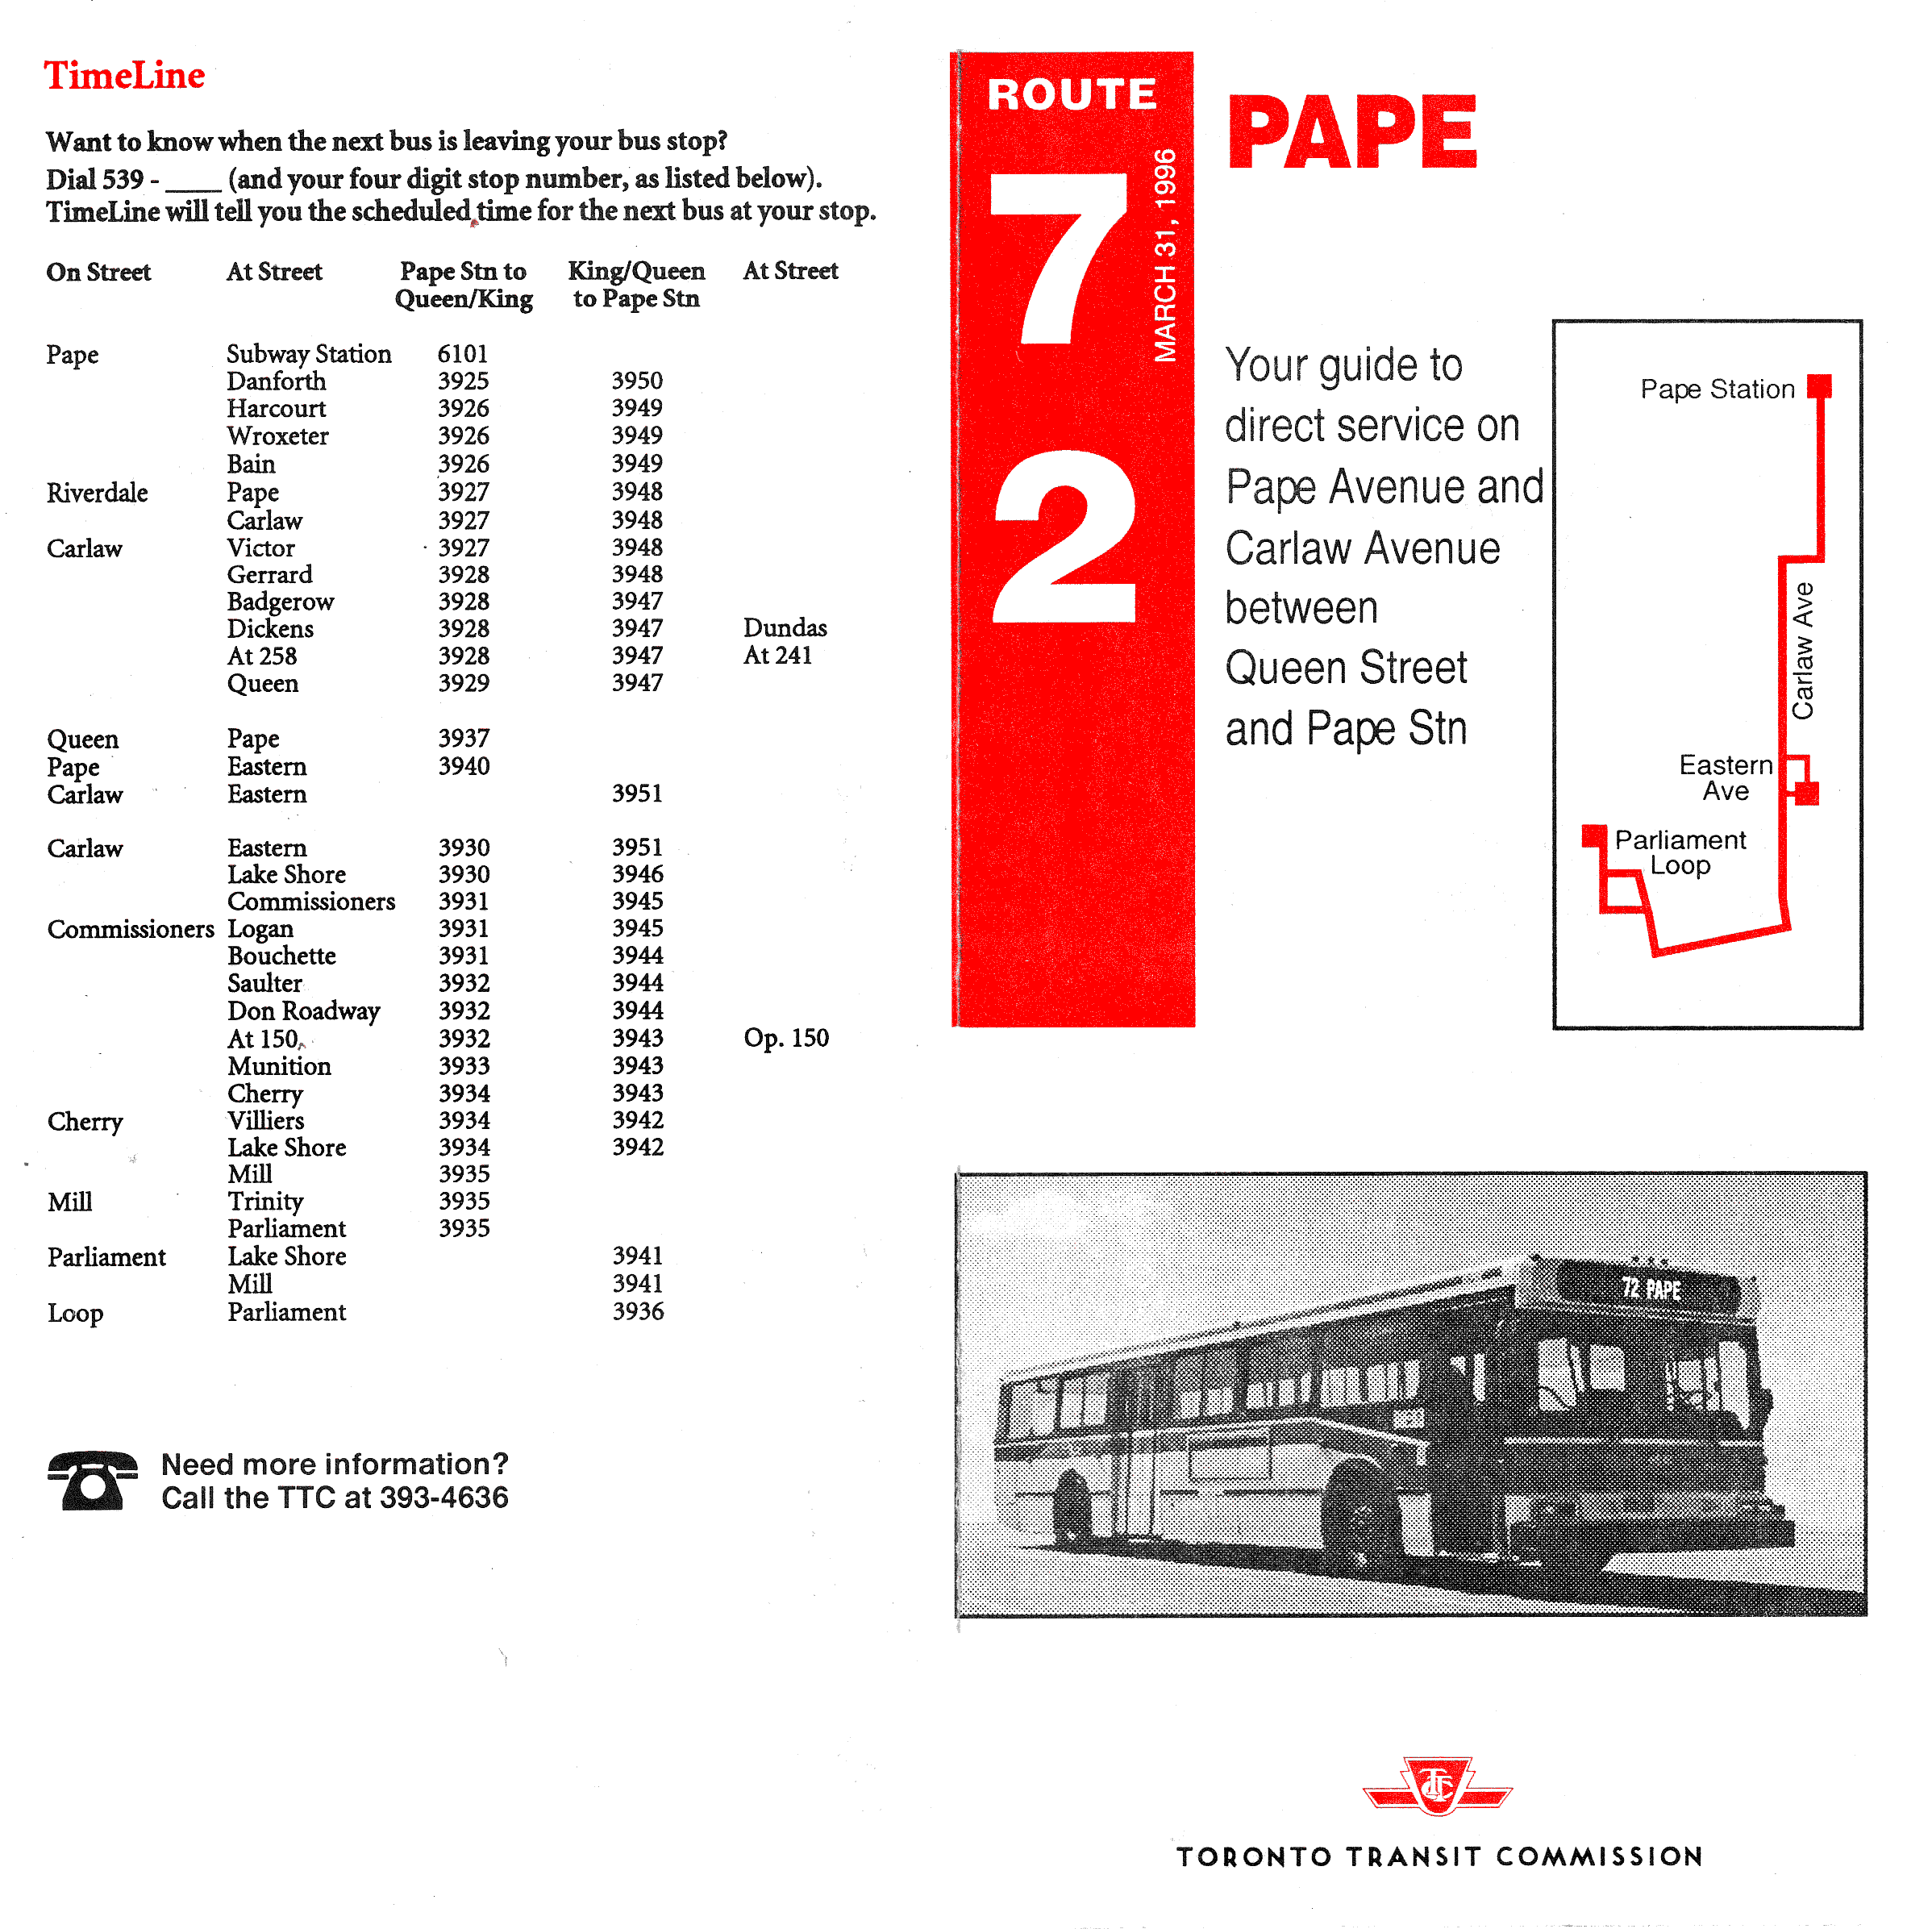 TTC 0000 72 Pape Timetable 19960331 p1